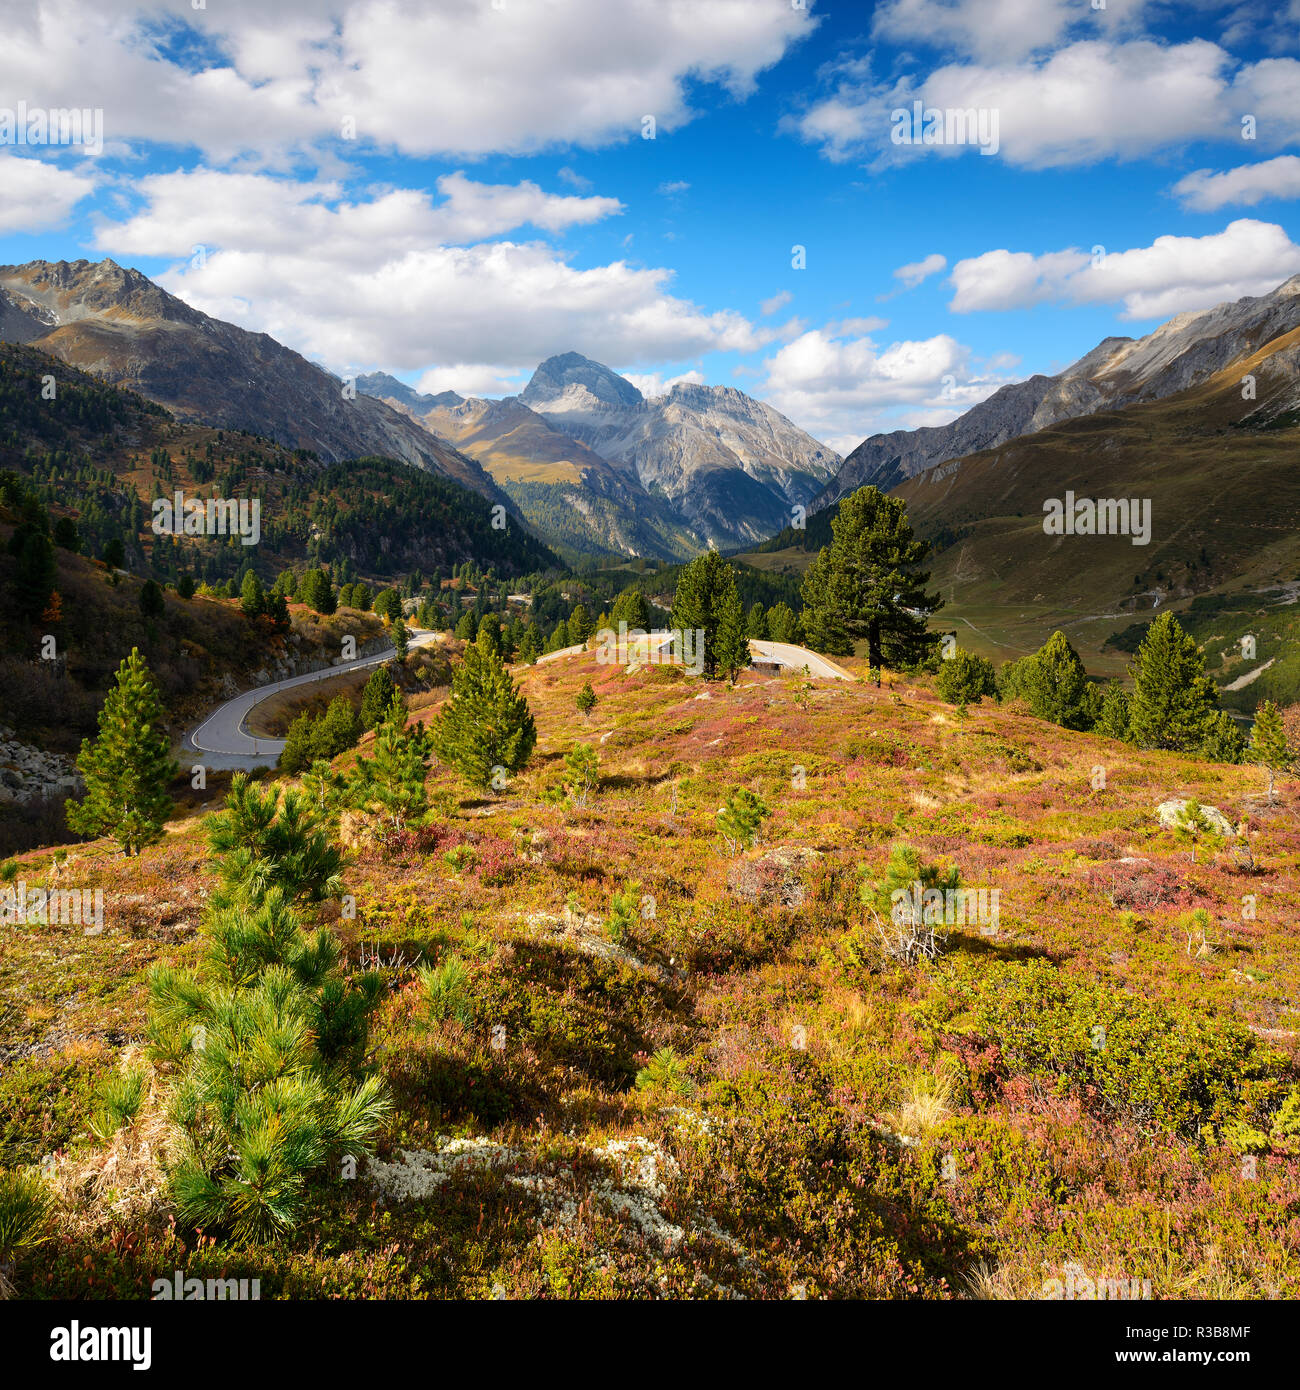 Paysage de montagne à l'Albulapass en automne, Albulatal, Val d'Alvra, Canton des Grisons, Suisse Banque D'Images